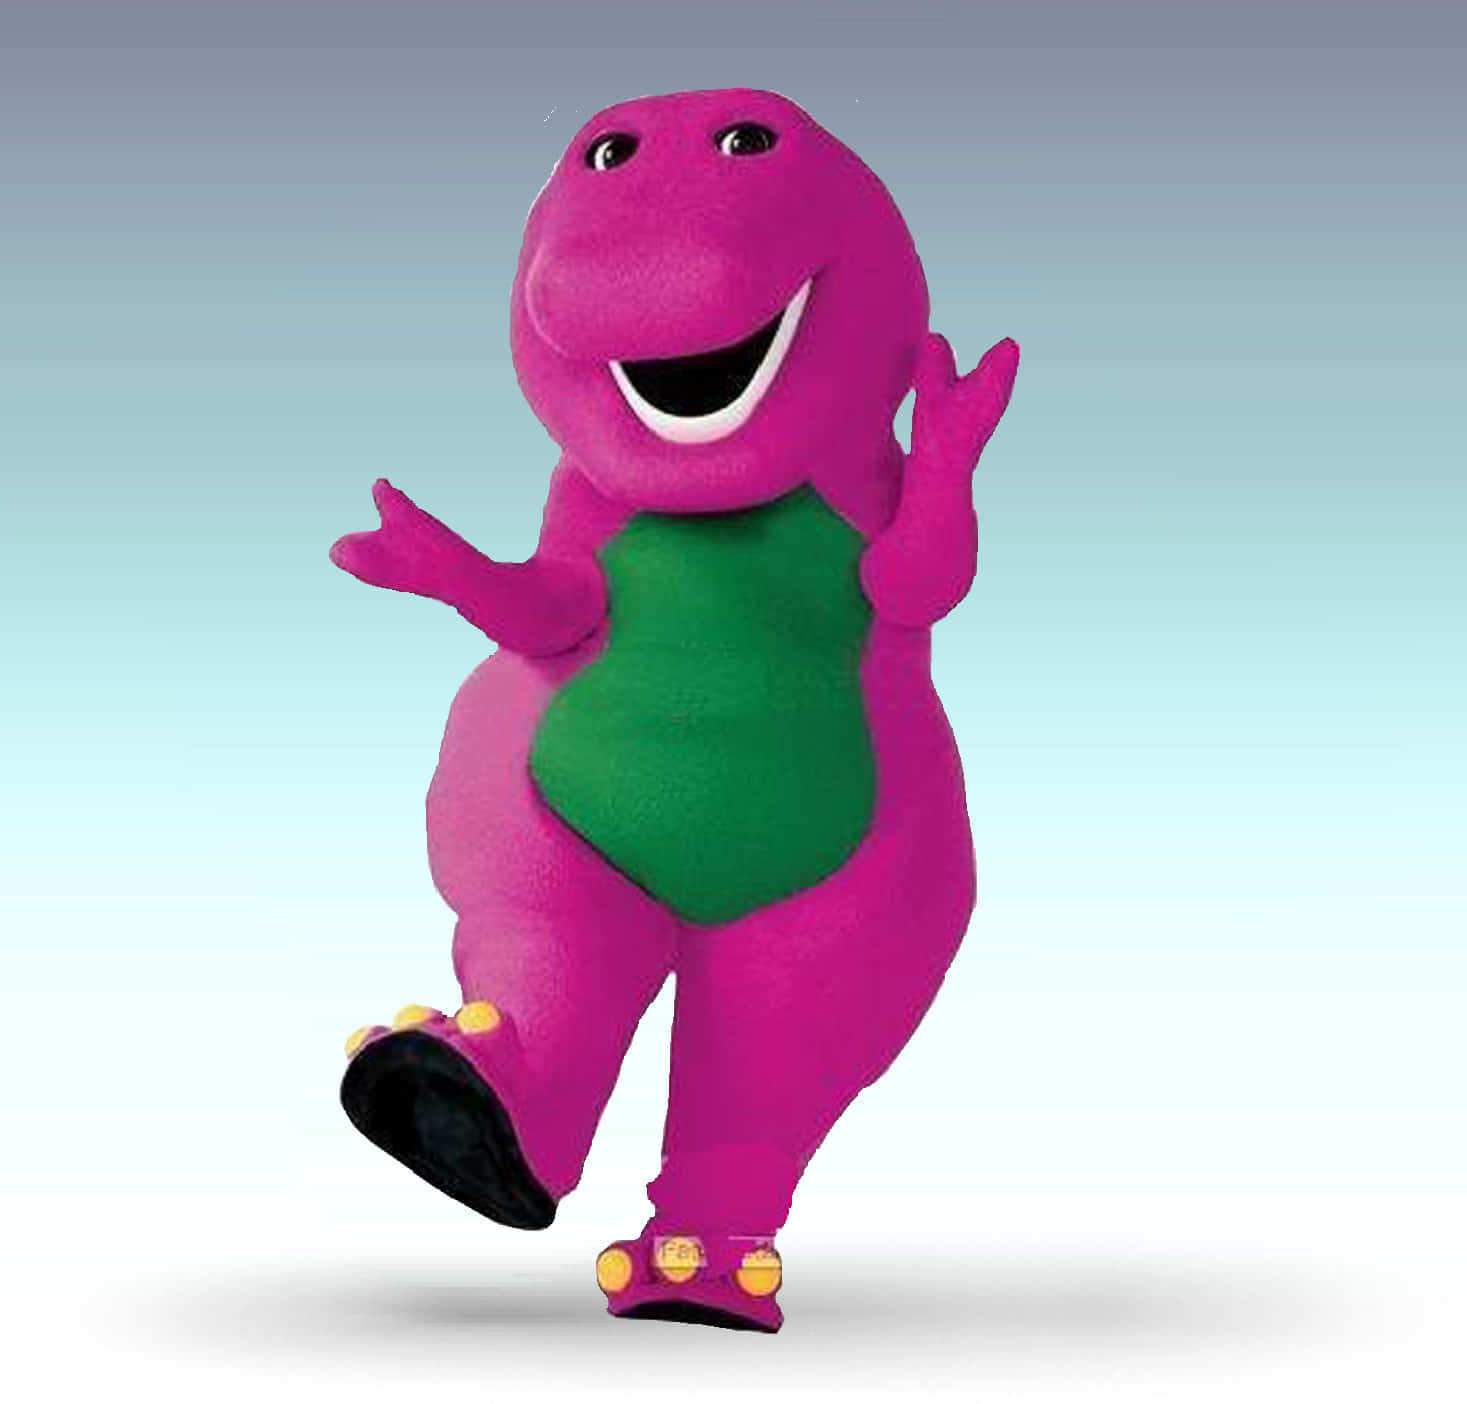 ¡atodos Les Encanta Un Poco De Travesuras De Barney!